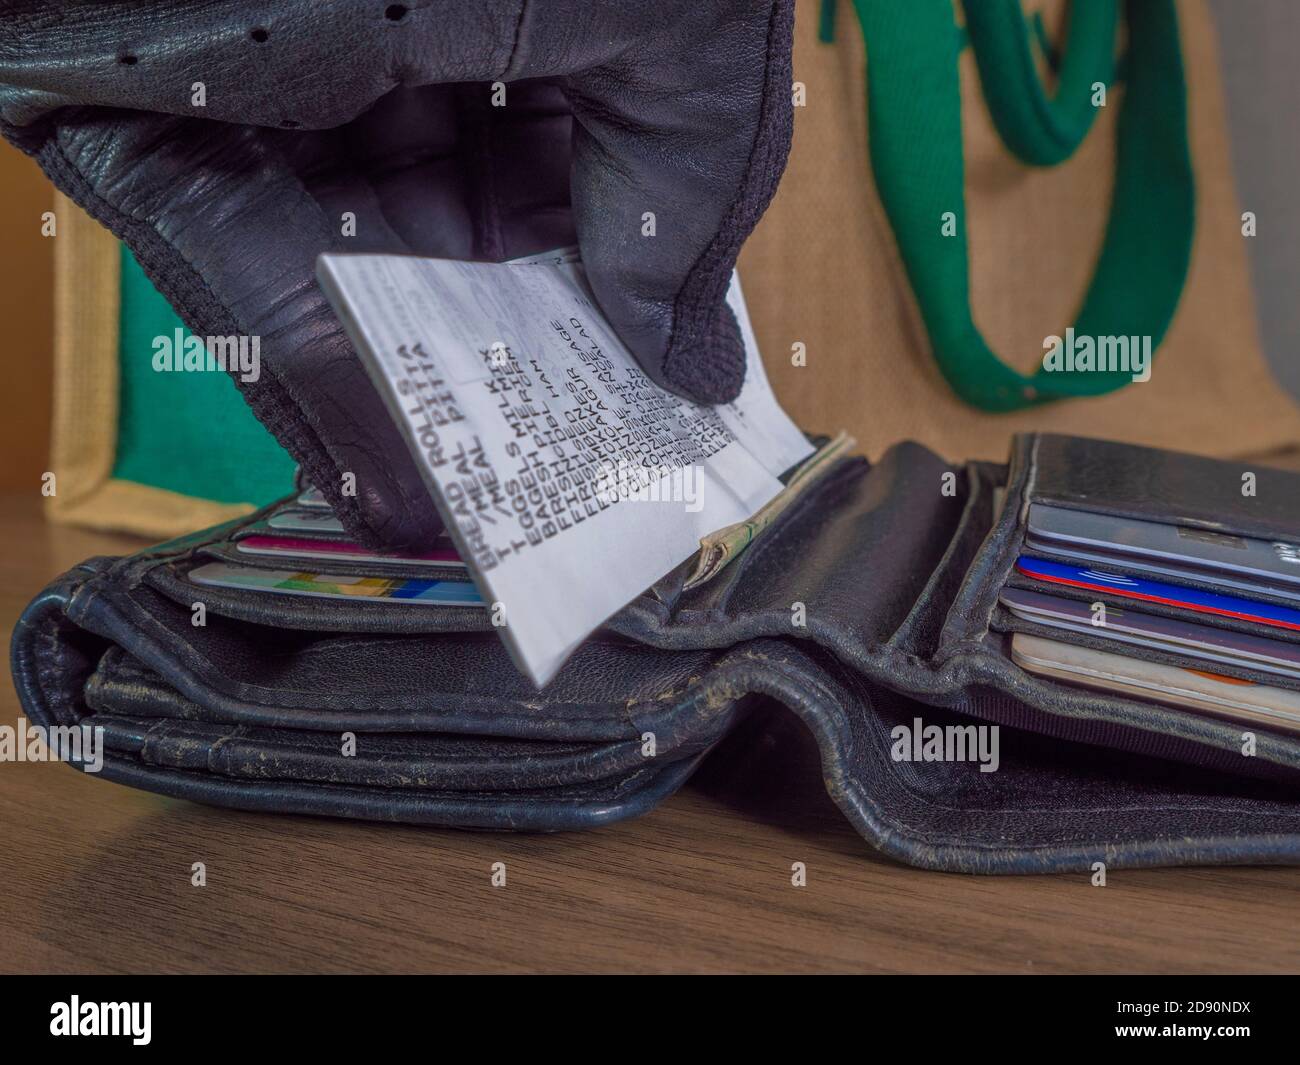 Primo piano POV di una mano guanto di un cliente che mette una ricevuta di acquisto di generi alimentari in una borsa in pelle aperta, di fronte a una borsa in tela. Foto Stock